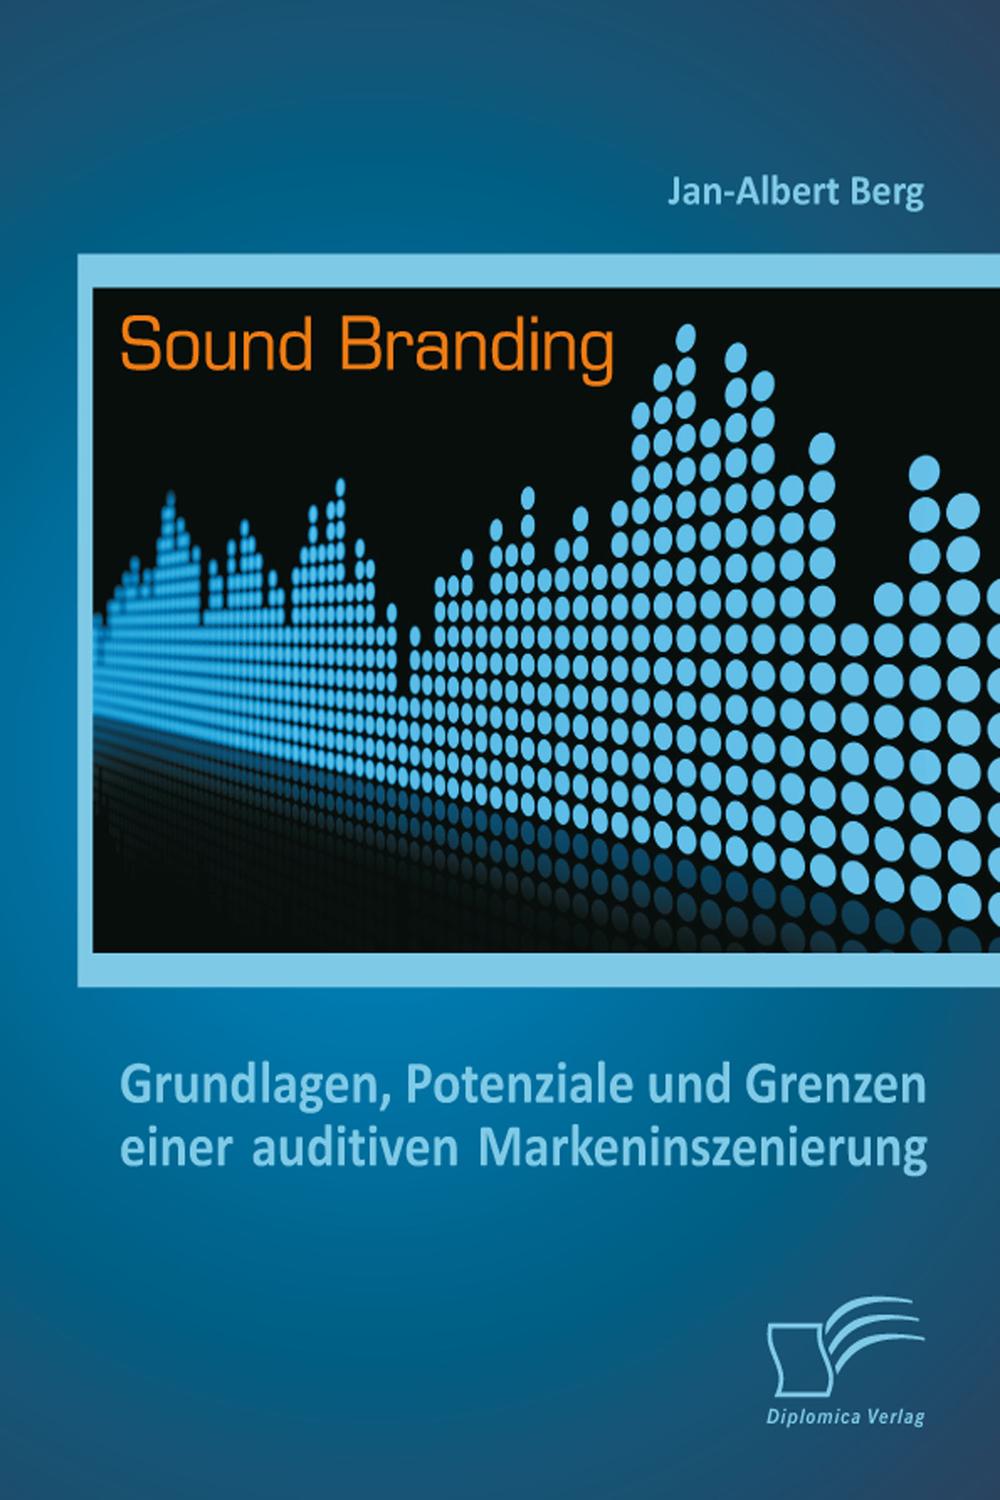 Sound Branding: Grundlagen, Potenziale und Grenzen einer auditiven Markeninszenierung - Jan-Albert Berg,,